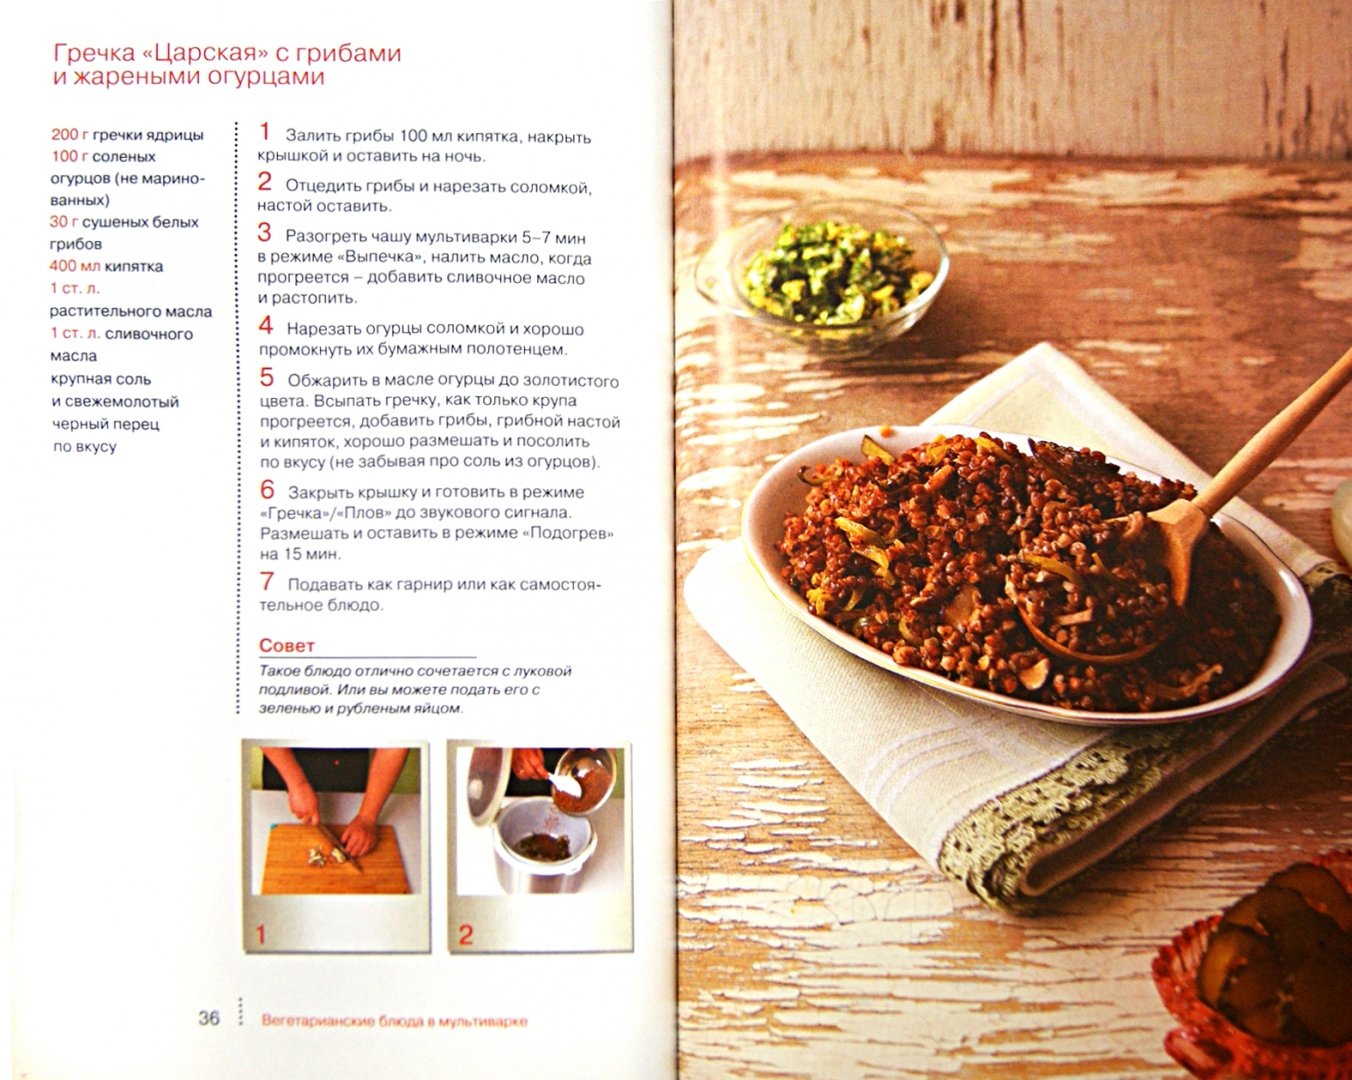 Иллюстрация 1 из 3 для Вегетарианские блюда в мультиварке - Н. Савинова | Лабиринт - книги. Источник: Лабиринт